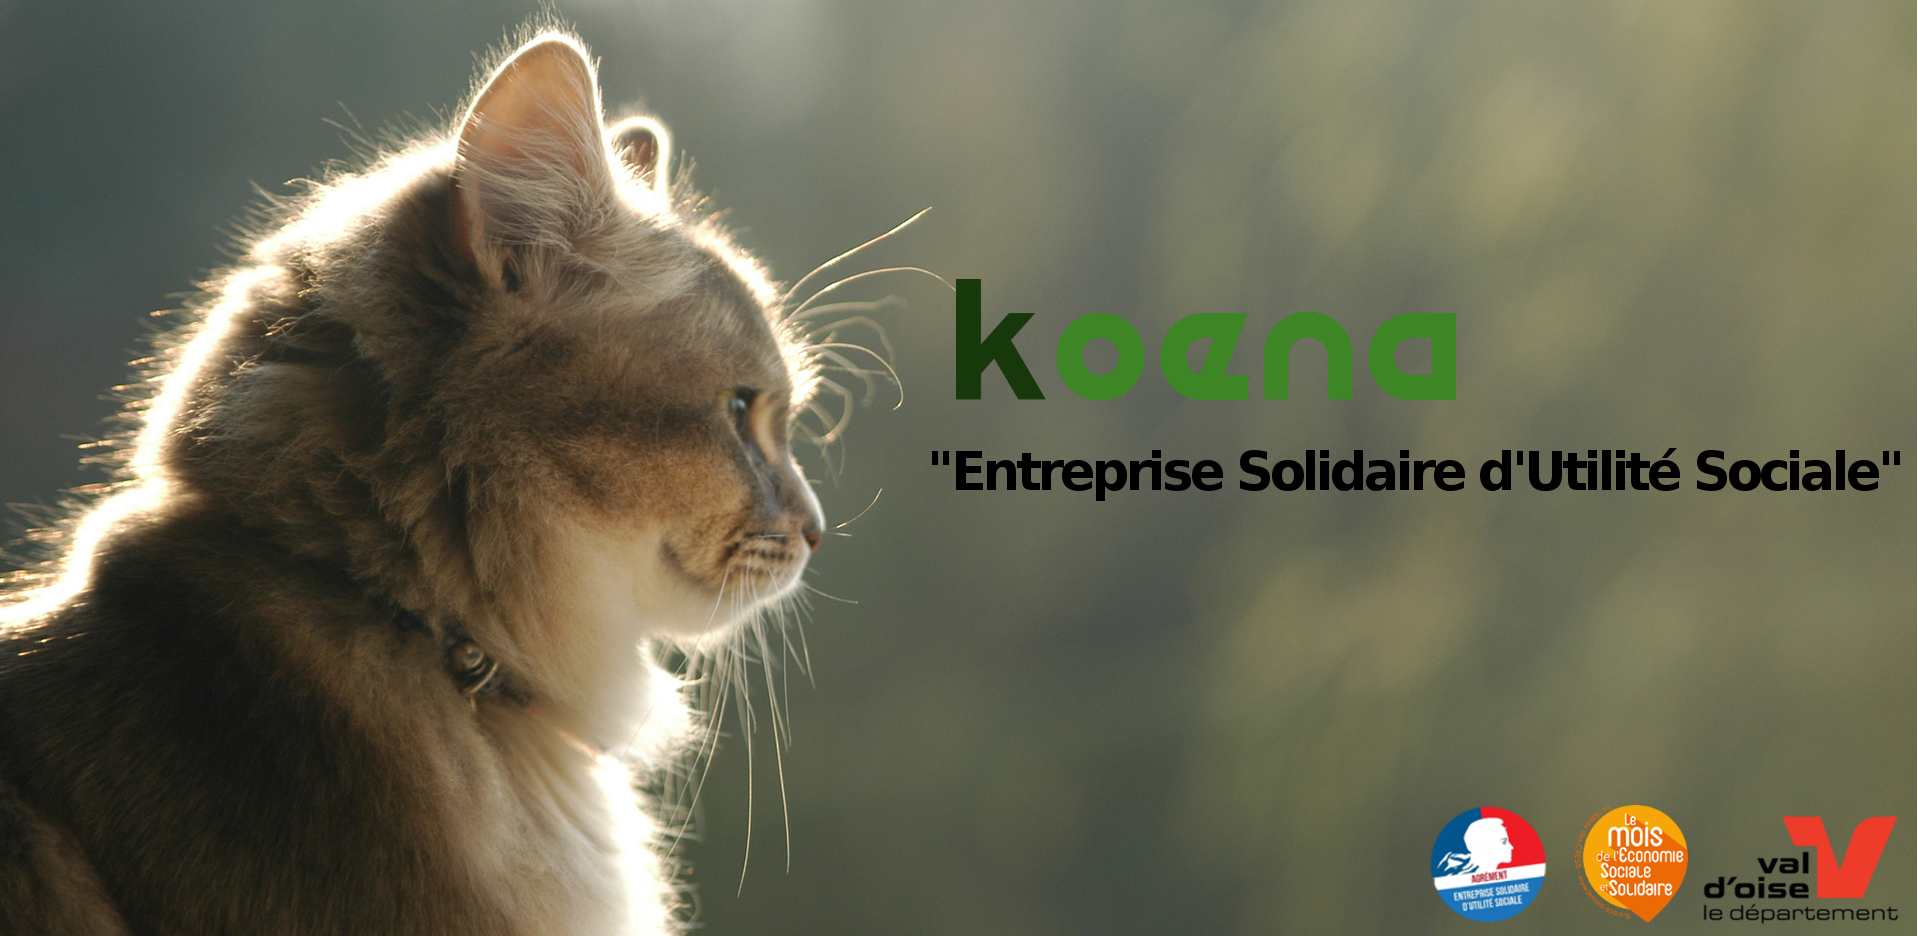 Koena "Entreprise Solidaire d'Utilité Sociale".